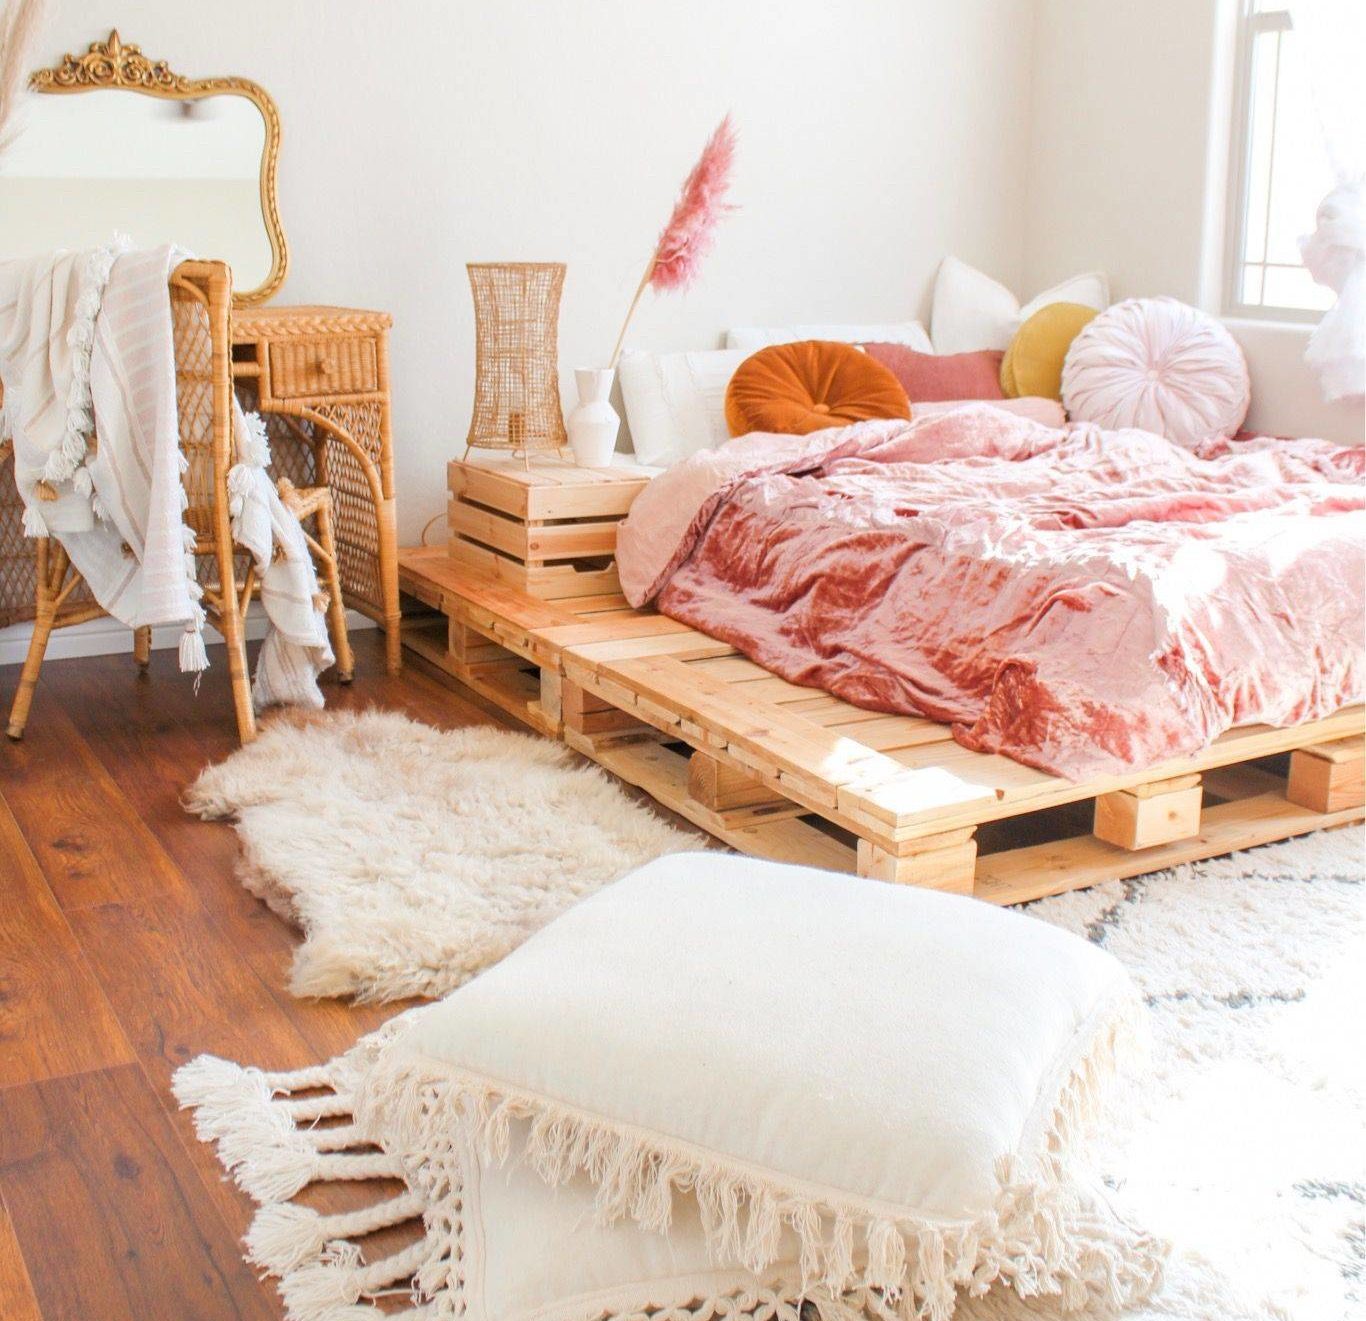 Căn phòng cực kỳ xinh xắn với tông màu trắng - hồng chủ đạo, kết hợp cùng nội thất là giường và táp đầu giường bằng gỗ pallet, bàn phấn trang điểm bằng mây tre đan, sàn gỗ cho vẻ đẹp mộc mạc, gần gũi với thiên nhiên.